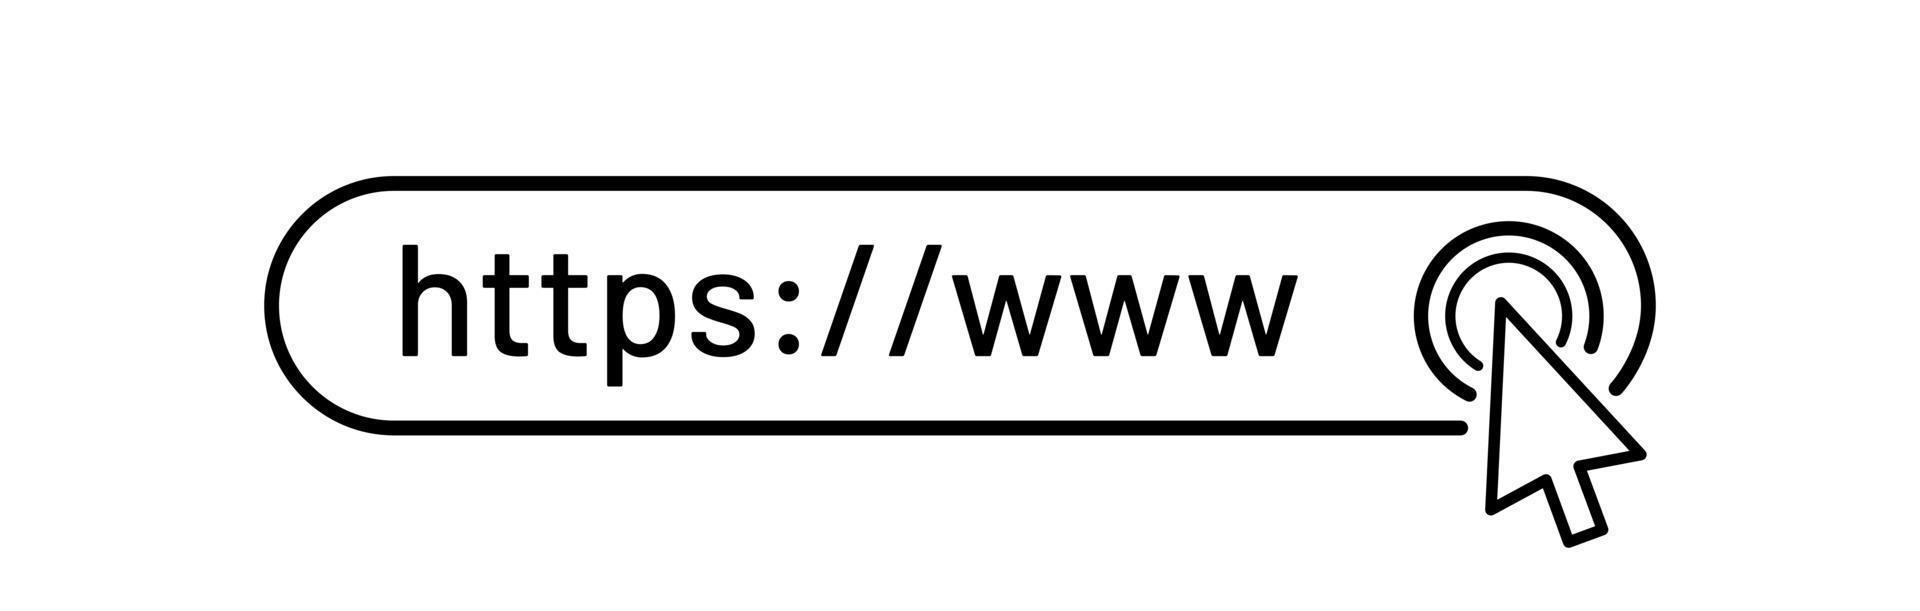 Browser-Adressleiste mit https-Protokollzeichen. Suchformularvorlagen für Mobilgeräte und Websites. vektor